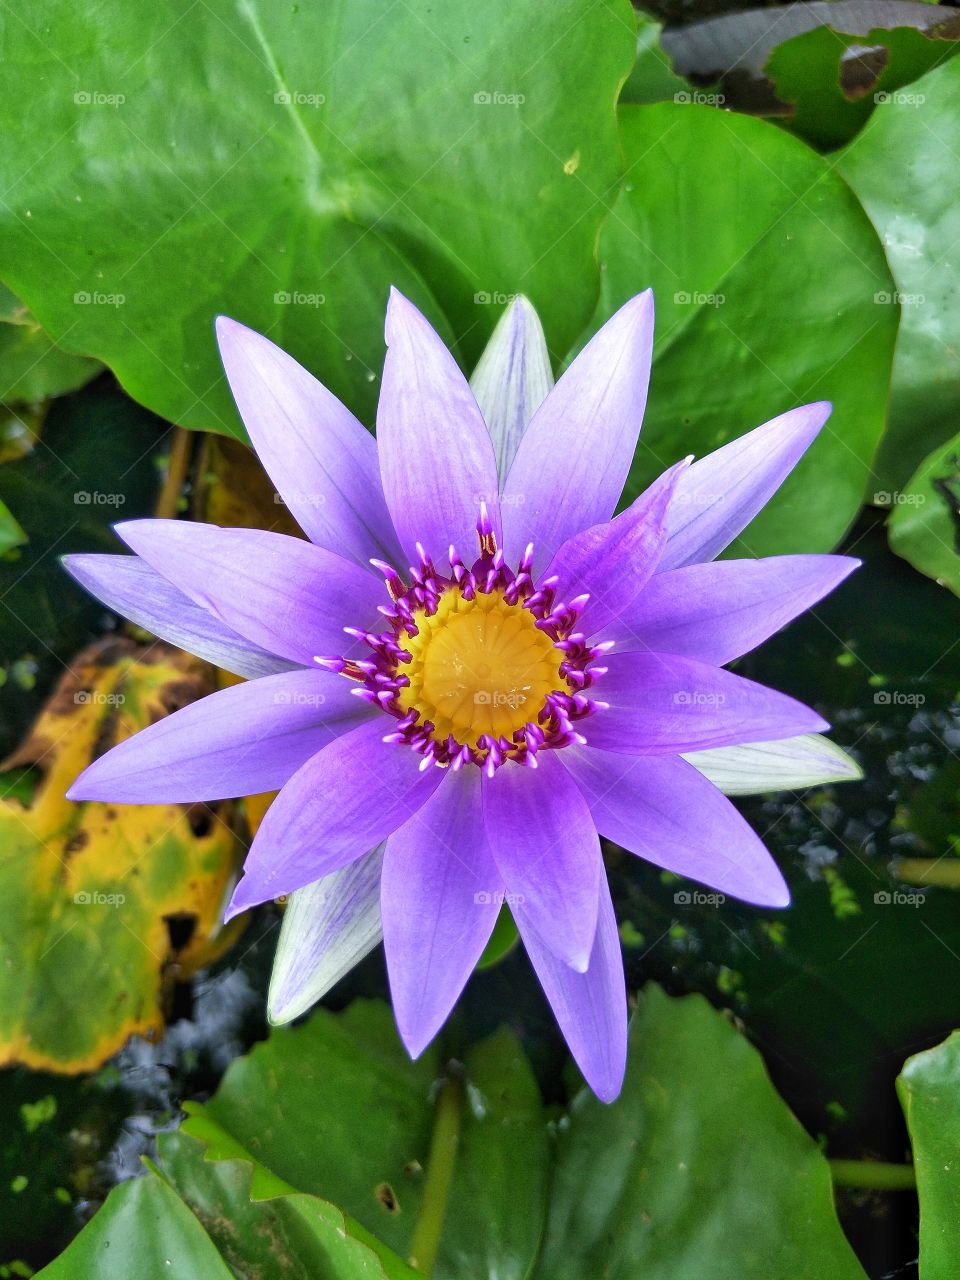 Beautiful flower.